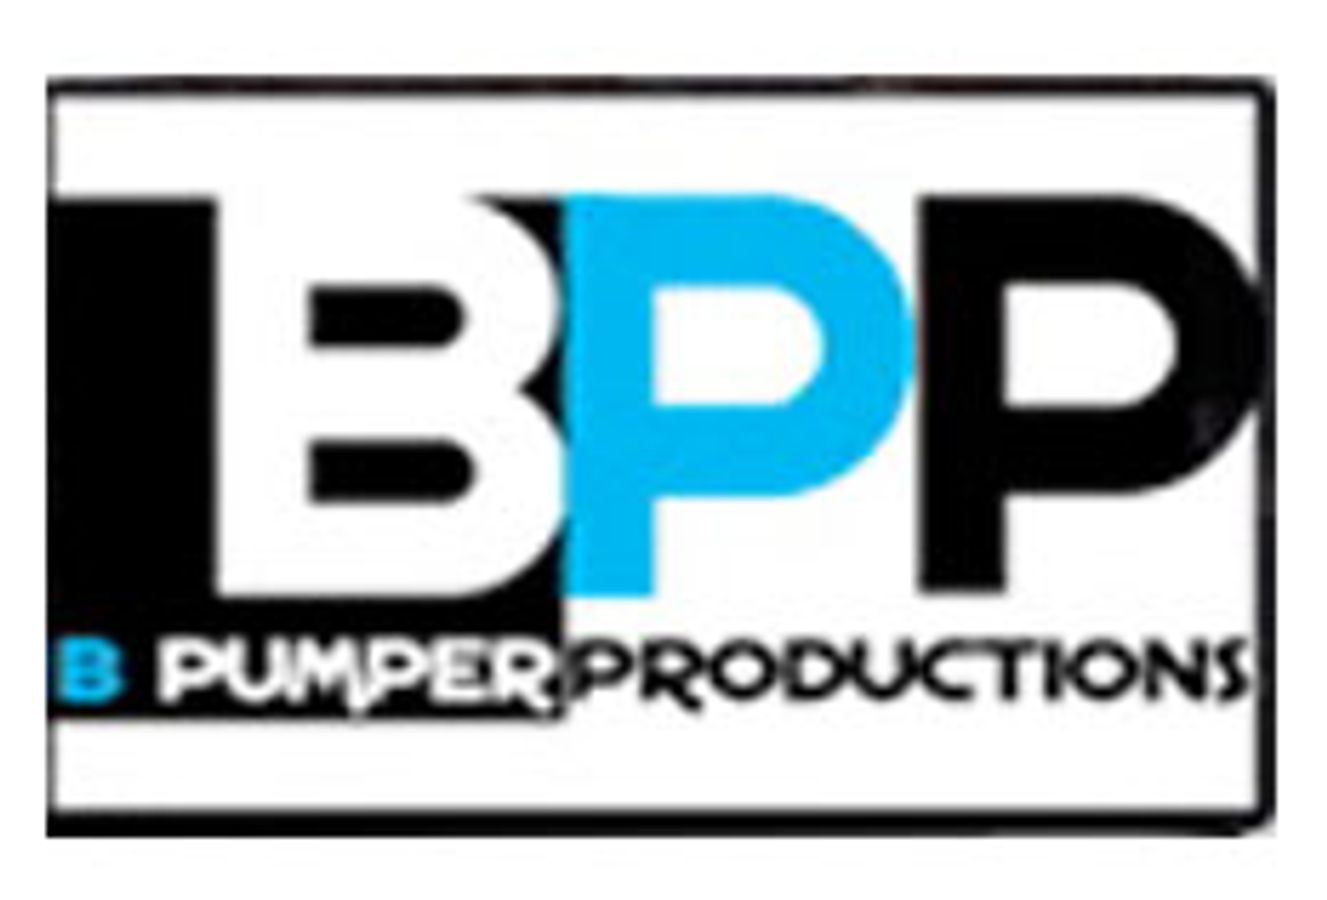 B. Pumper Productions